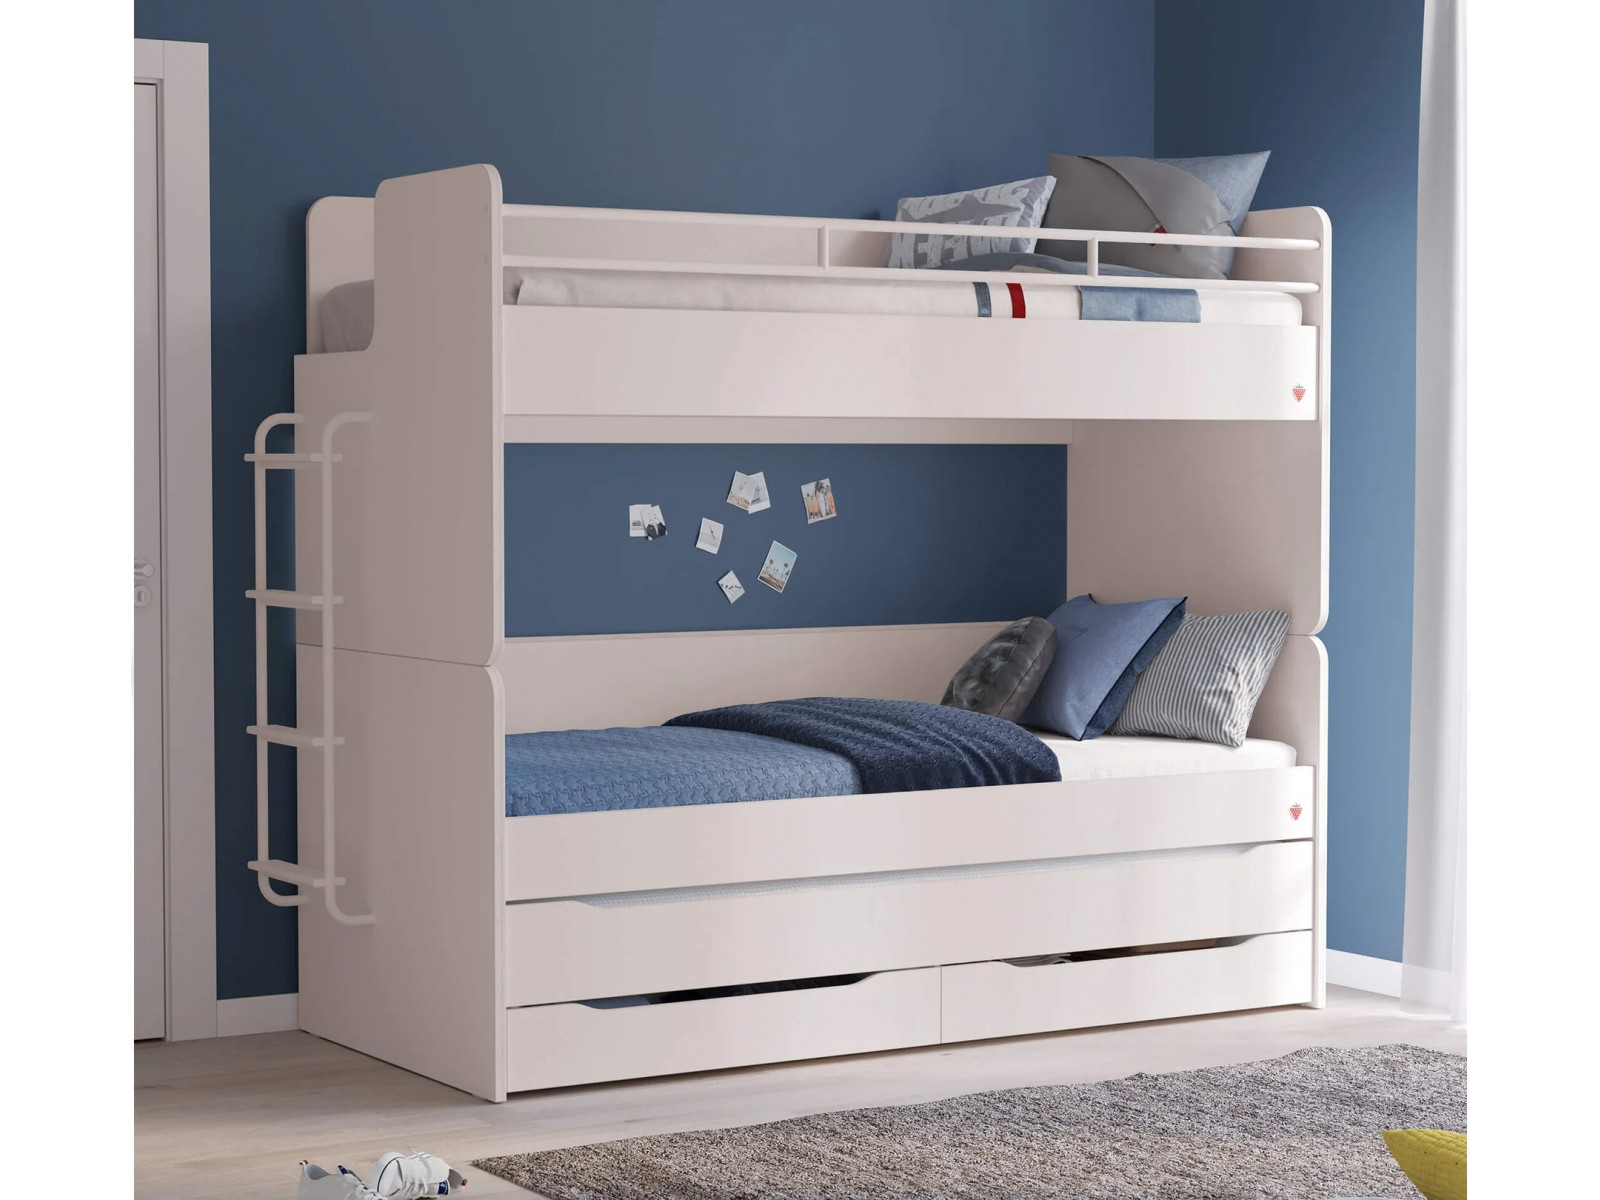 Купить элитную двуспальную Кровать Де Лайт в Москве в интернет-магазине Dream Catchers